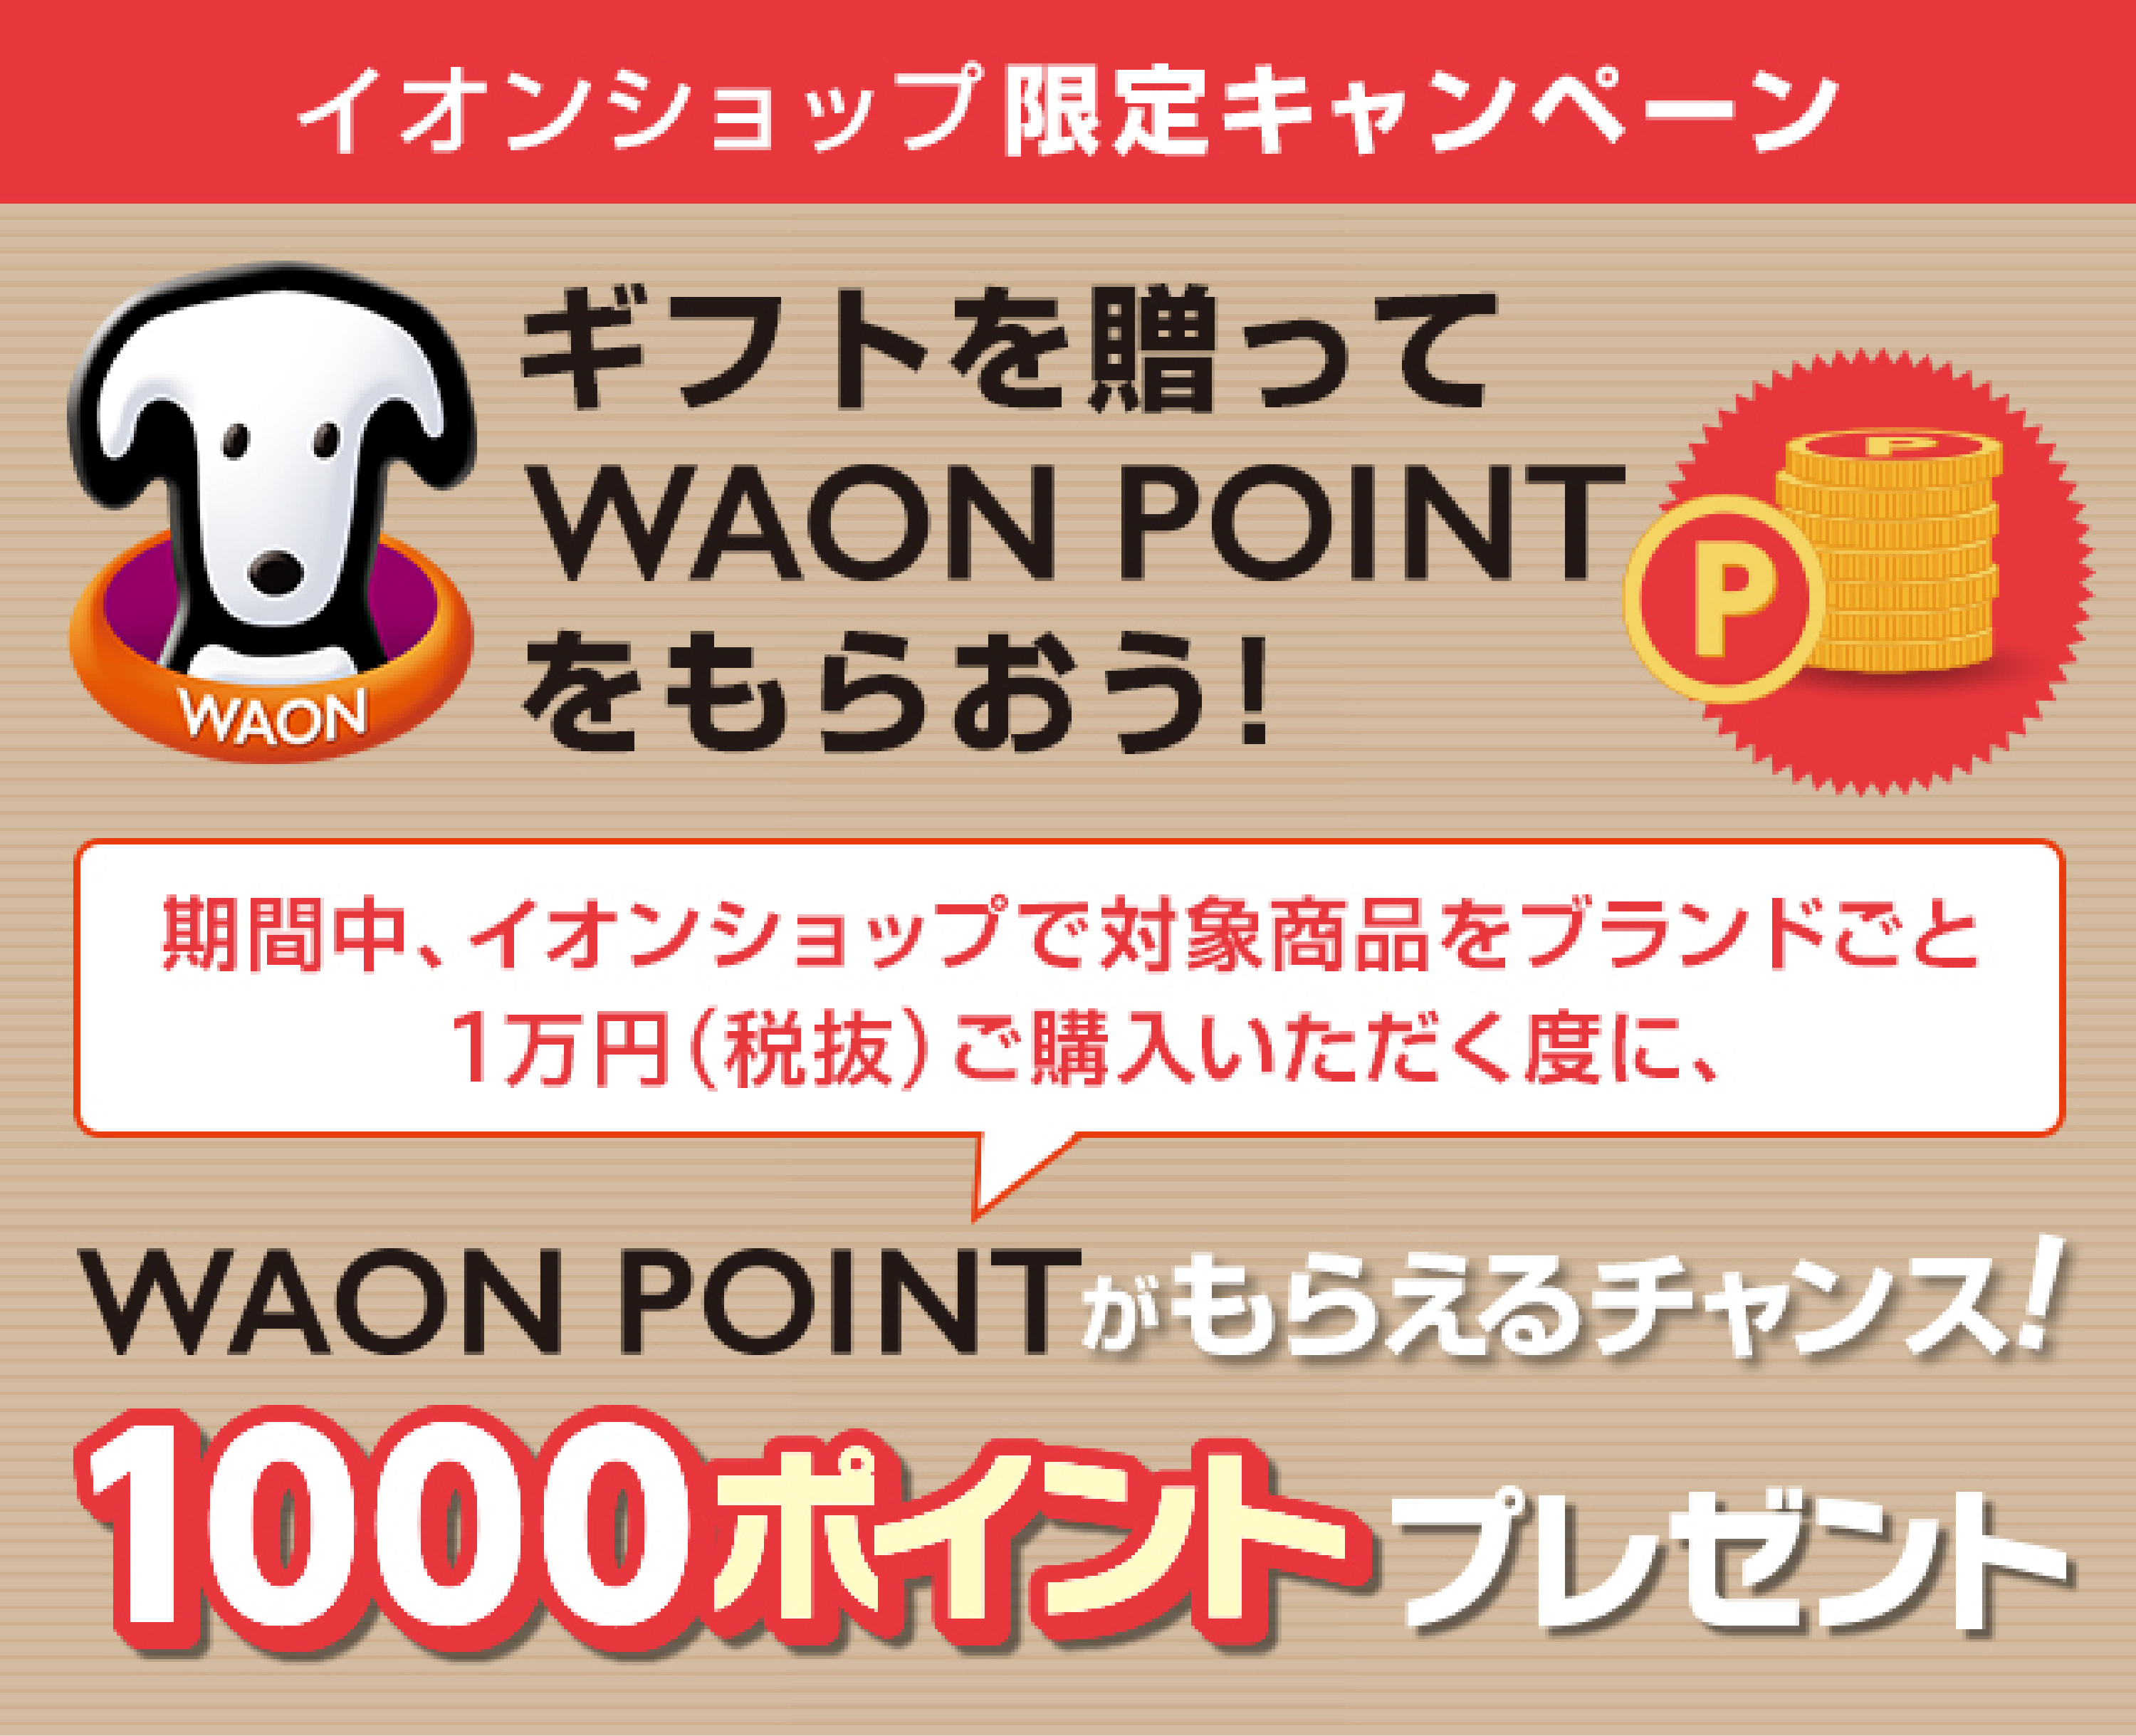 イオンショップ限定キャンペーンギフトを贈ってWAONPOINTをもらおう！
					期間中、イオンショップで対象商品をブランドごと１万円（税抜）ご購入いただく度に、WAONPOINTがもらえるチャンス！1000ポイントプレゼント